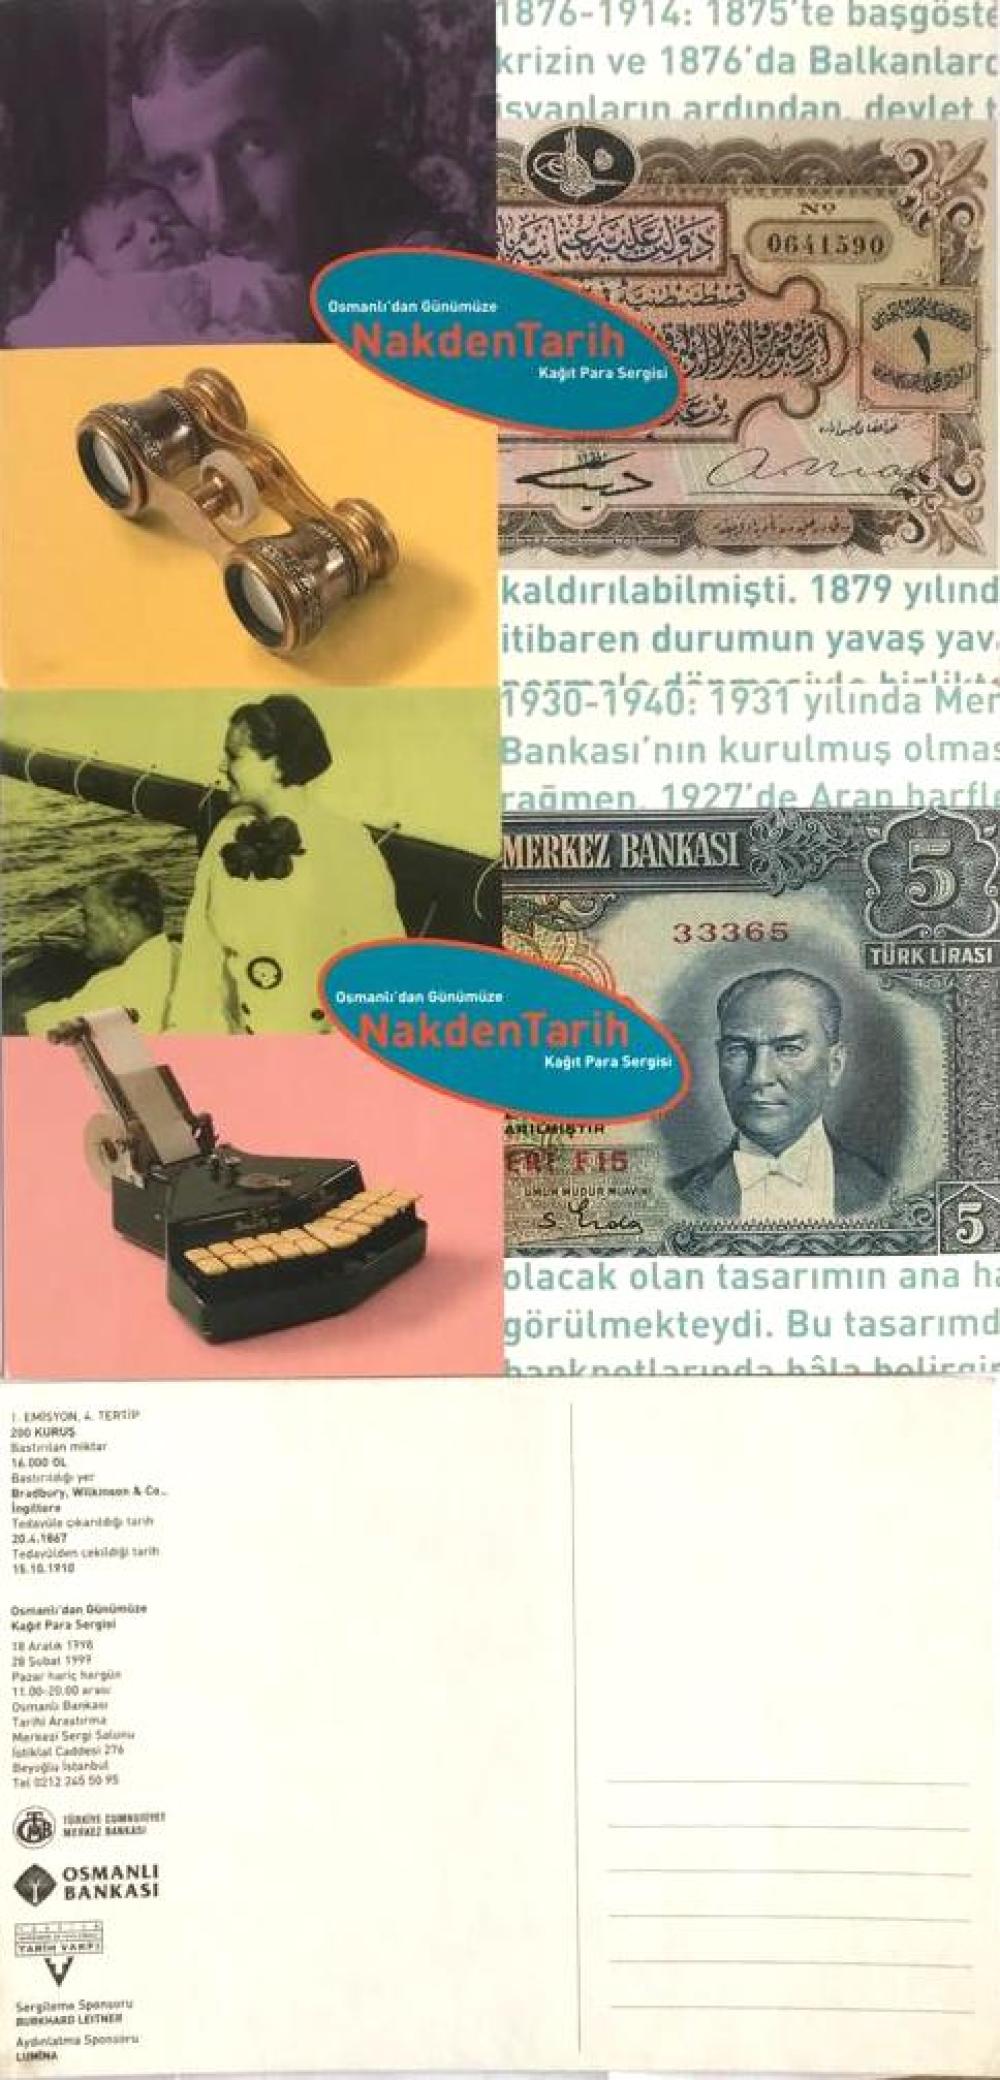 Osmanlı'dan Günümüze Nakden Tarih Kağıt Para Sergisi - 6 adet, 15x23 Kartpostal